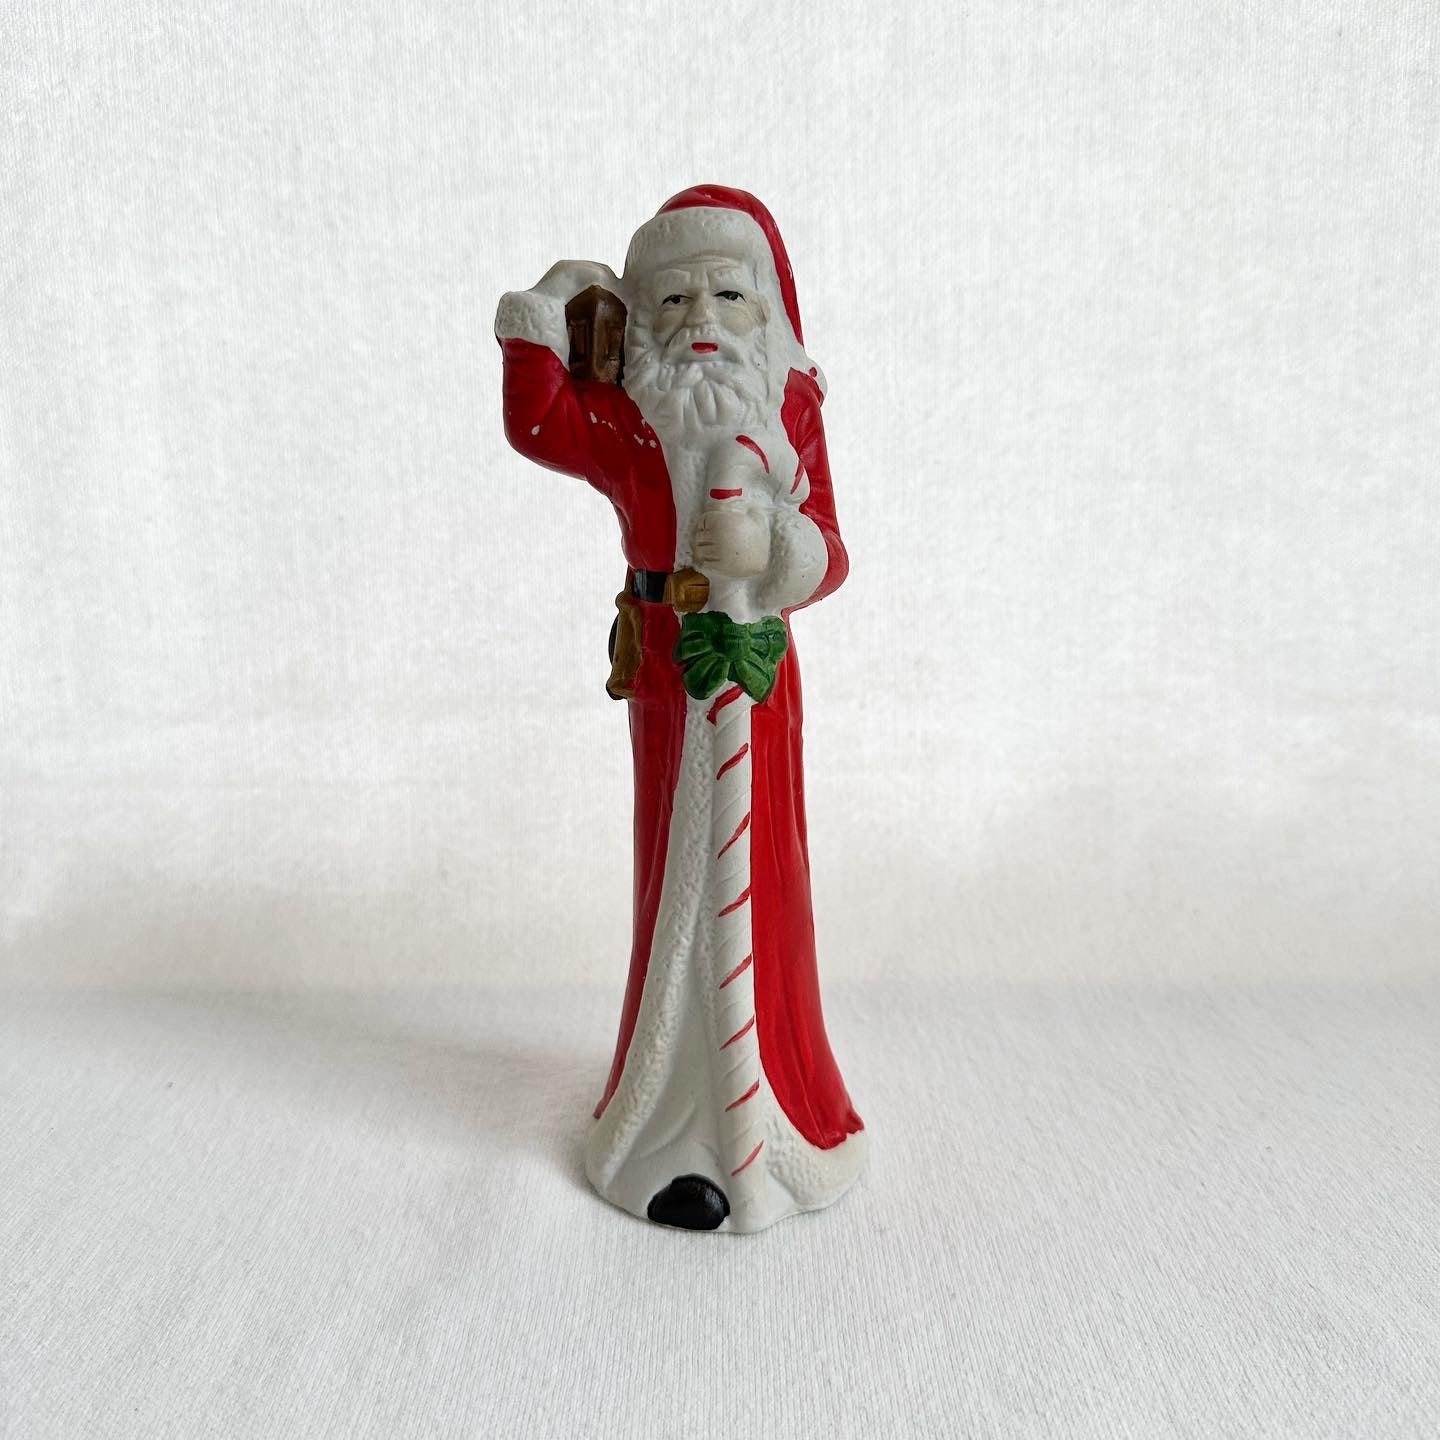 Tall Santa Claus